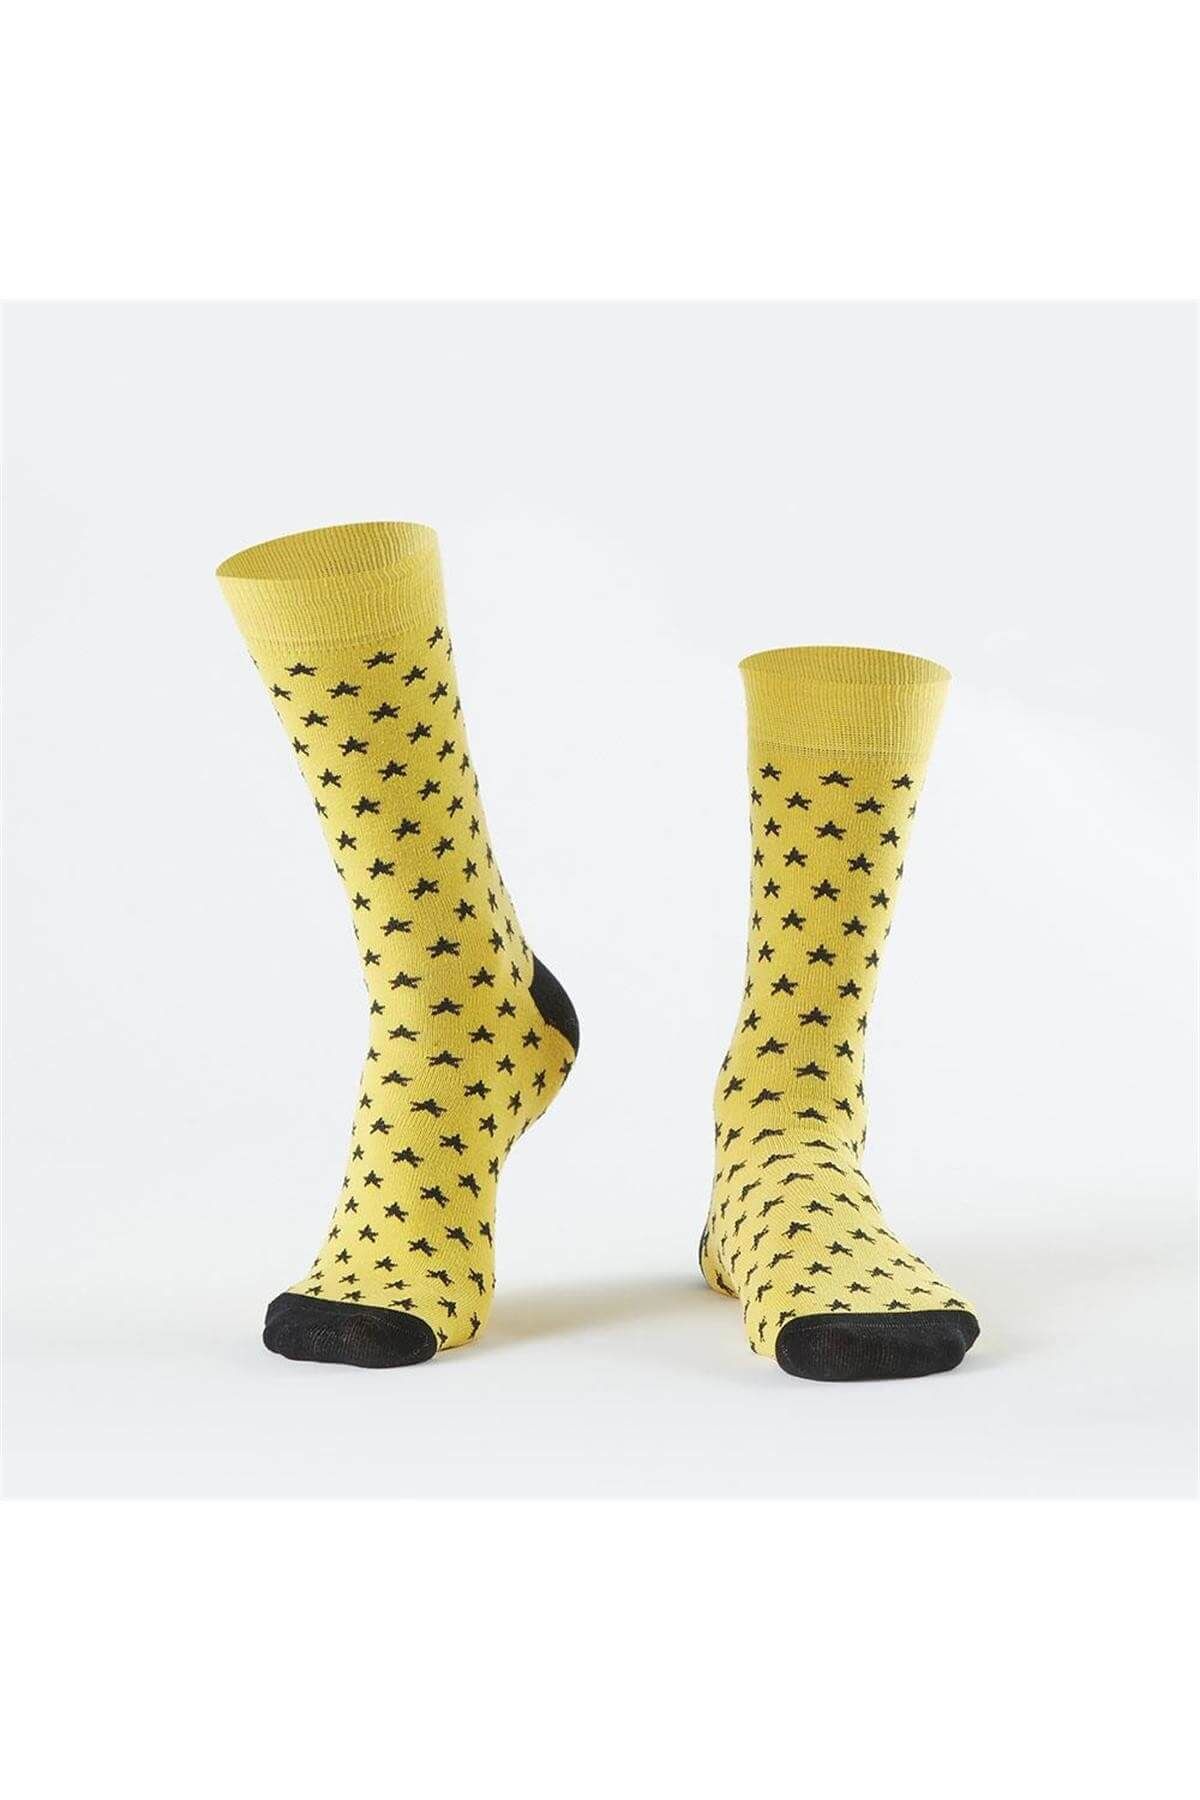 Özgür Çoraplar Erkek Sarı Yıldızlar Çorap  09f892d9